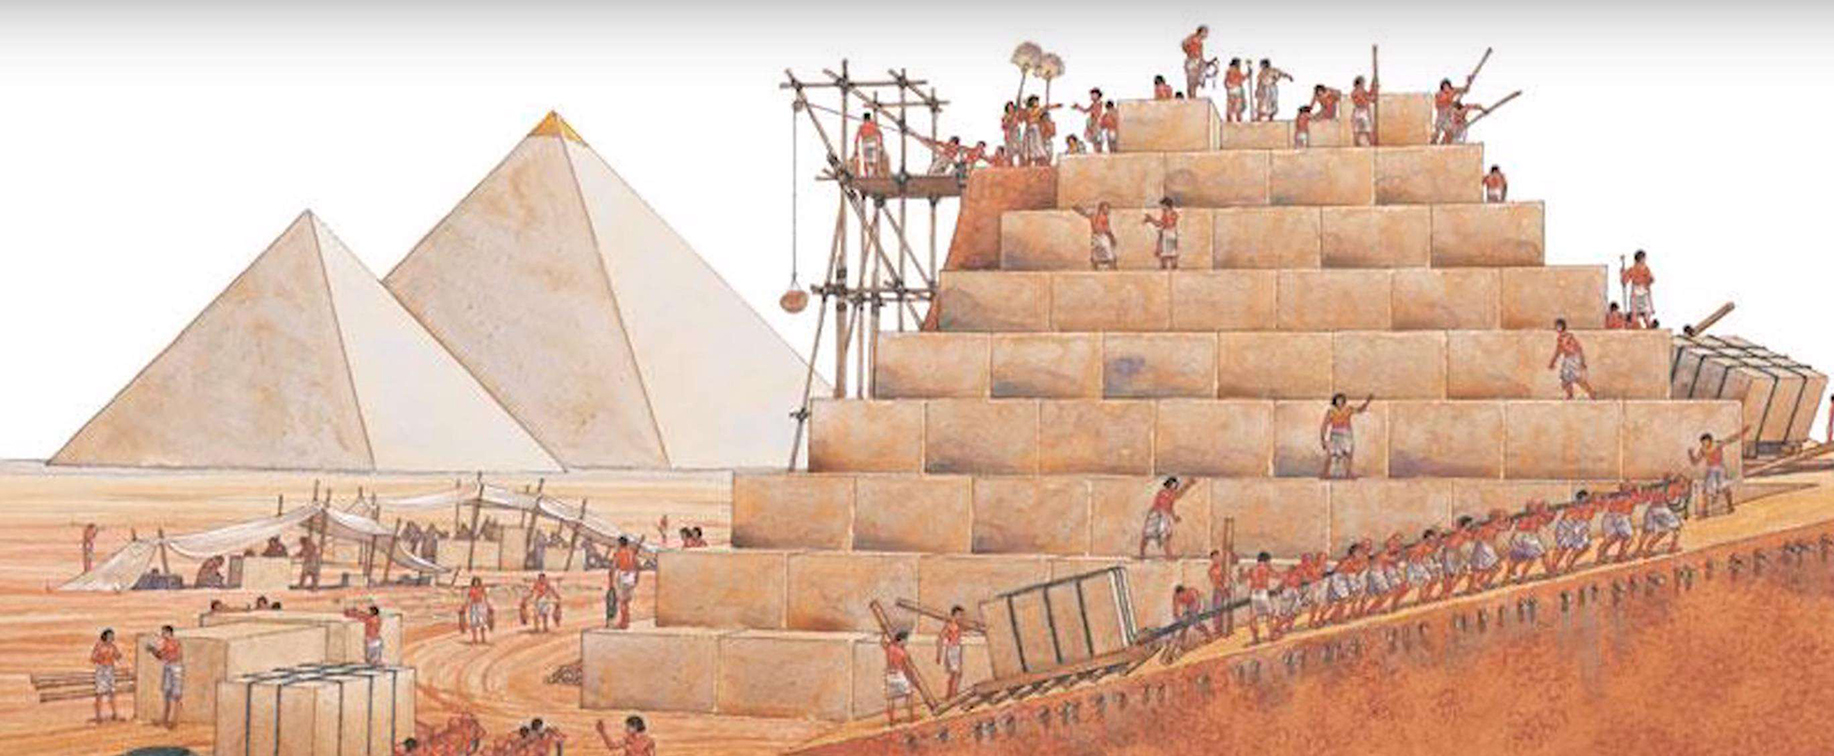 古埃及最富有盛名的就是金字塔,金字塔中最有名的是胡夫金字塔,胡夫